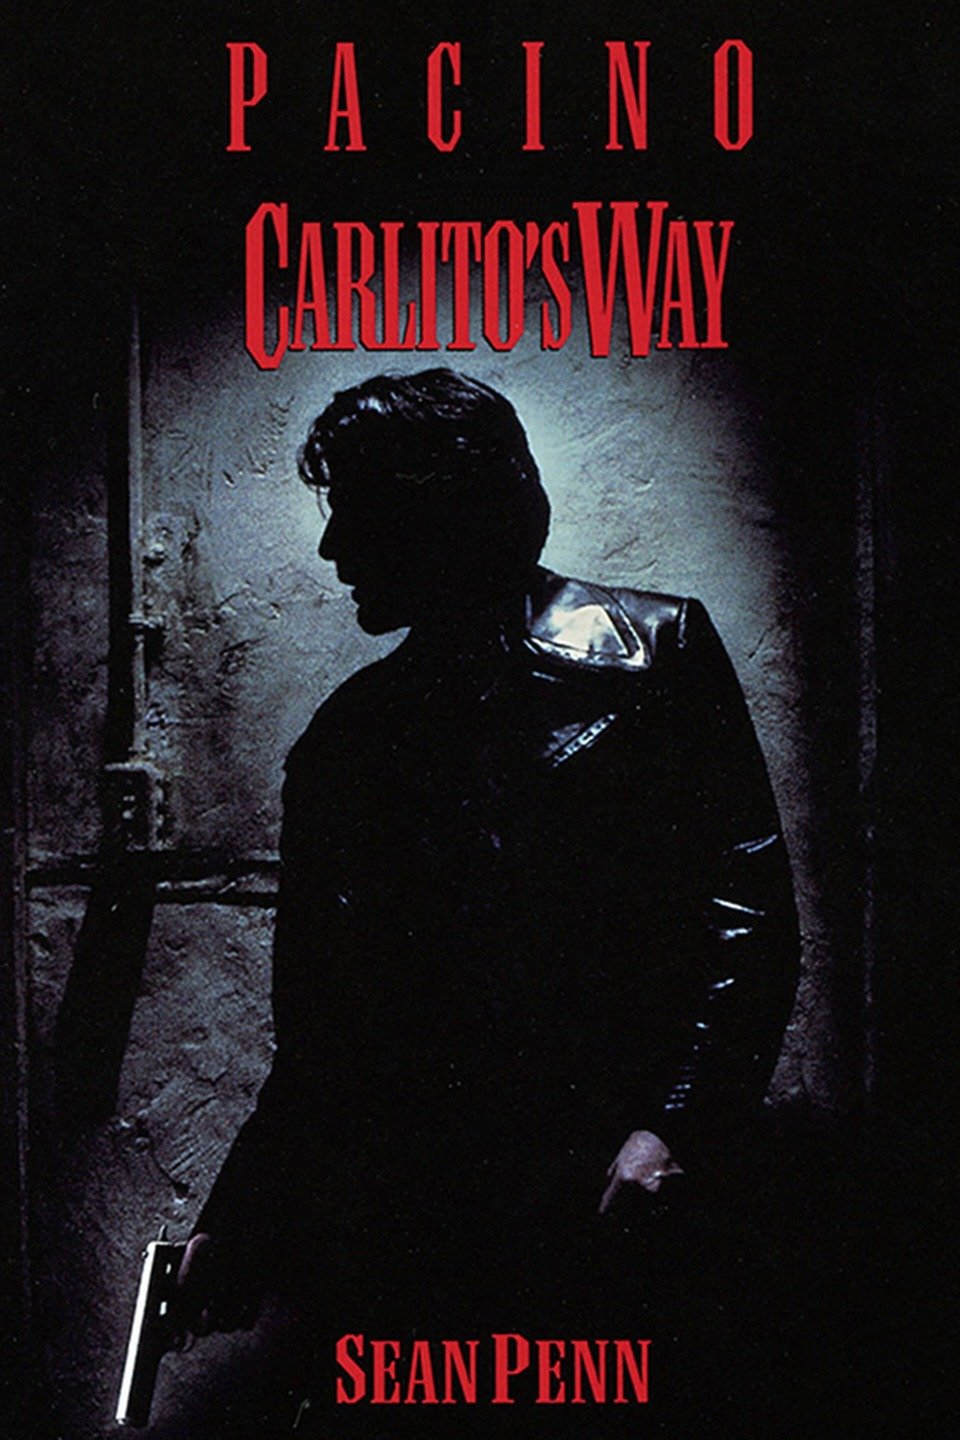 Stiahni si Filmy CZ/SK dabing Carlitova cesta / Carlito's Way (1993)(Mastered)(Hevc)(1080p)(BluRay)(English-CZ) = CSFD 86%